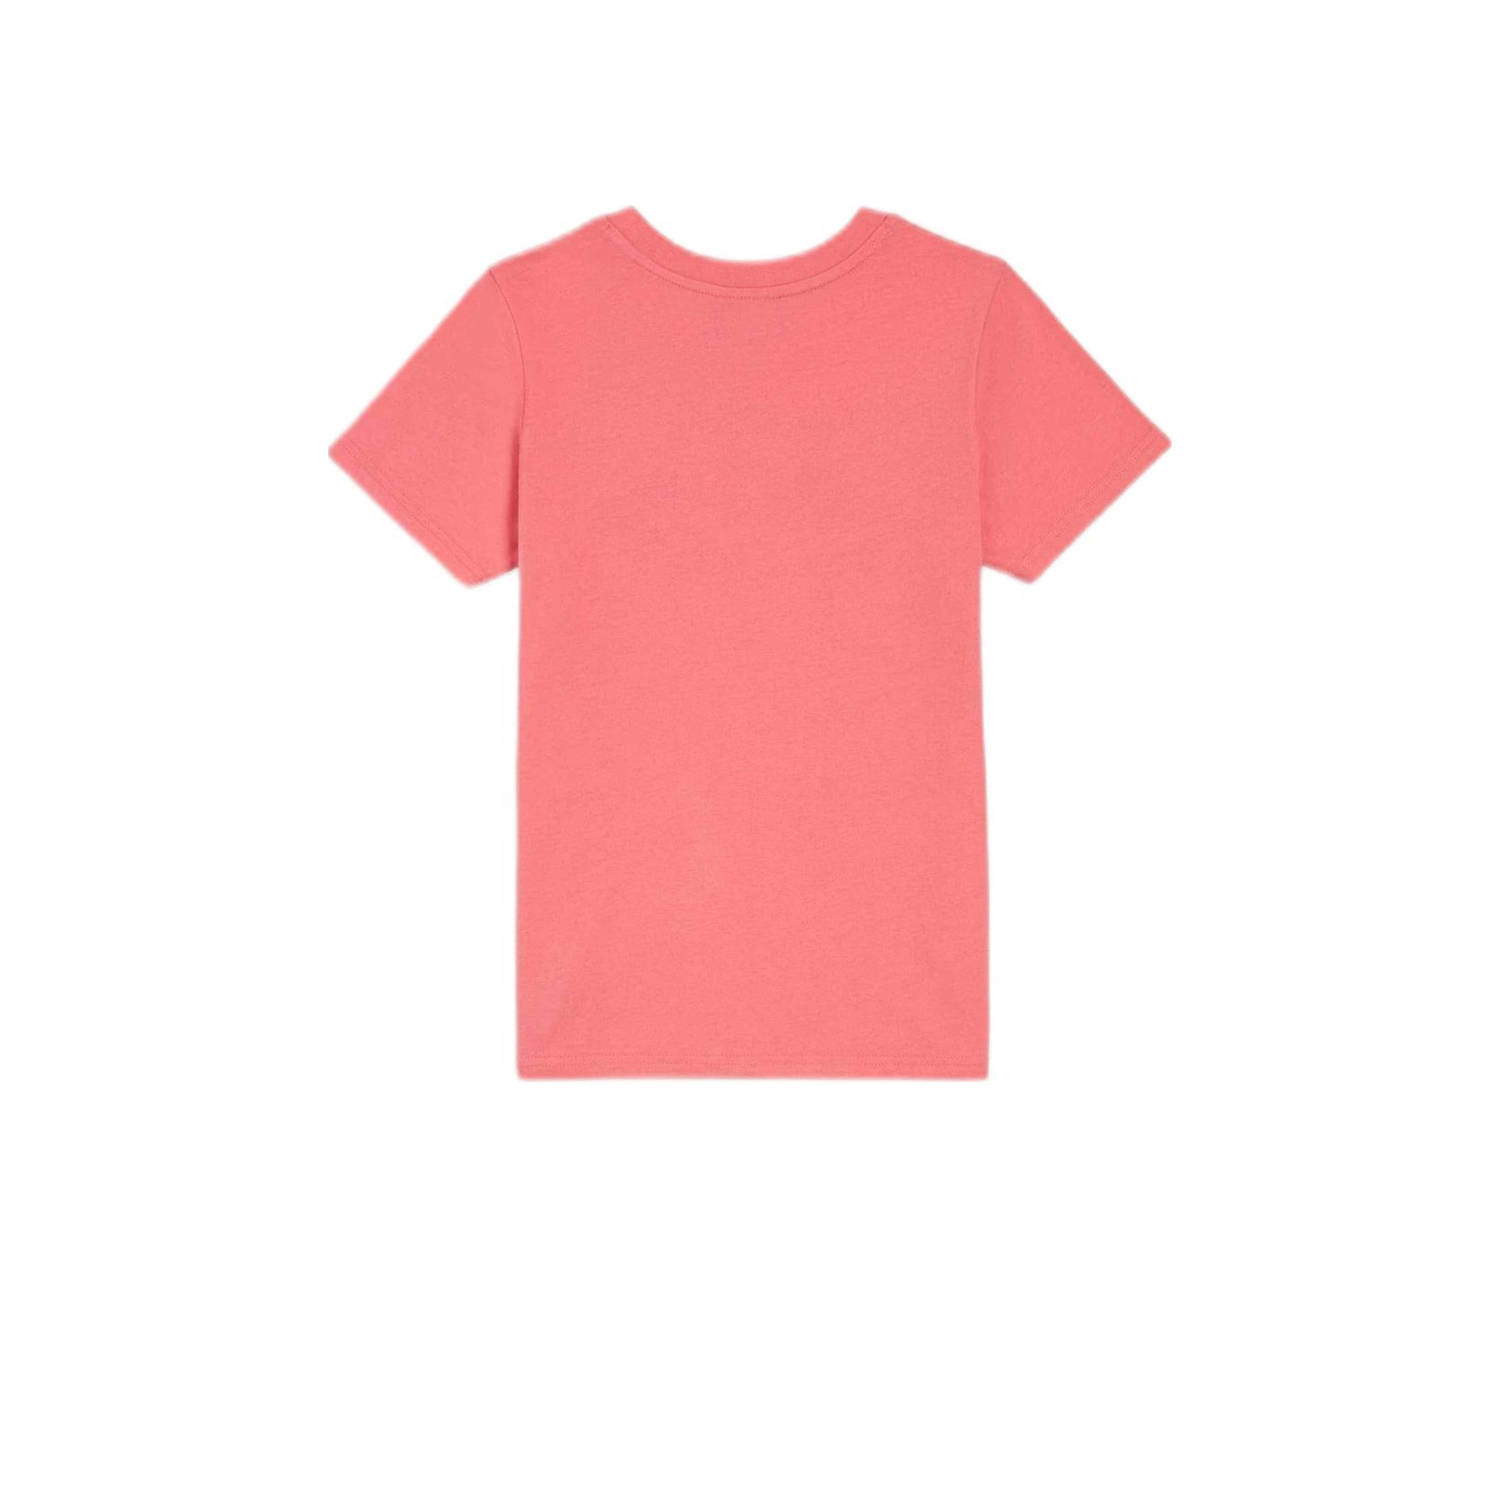 O'Neill T-shirt met printopdruk roze